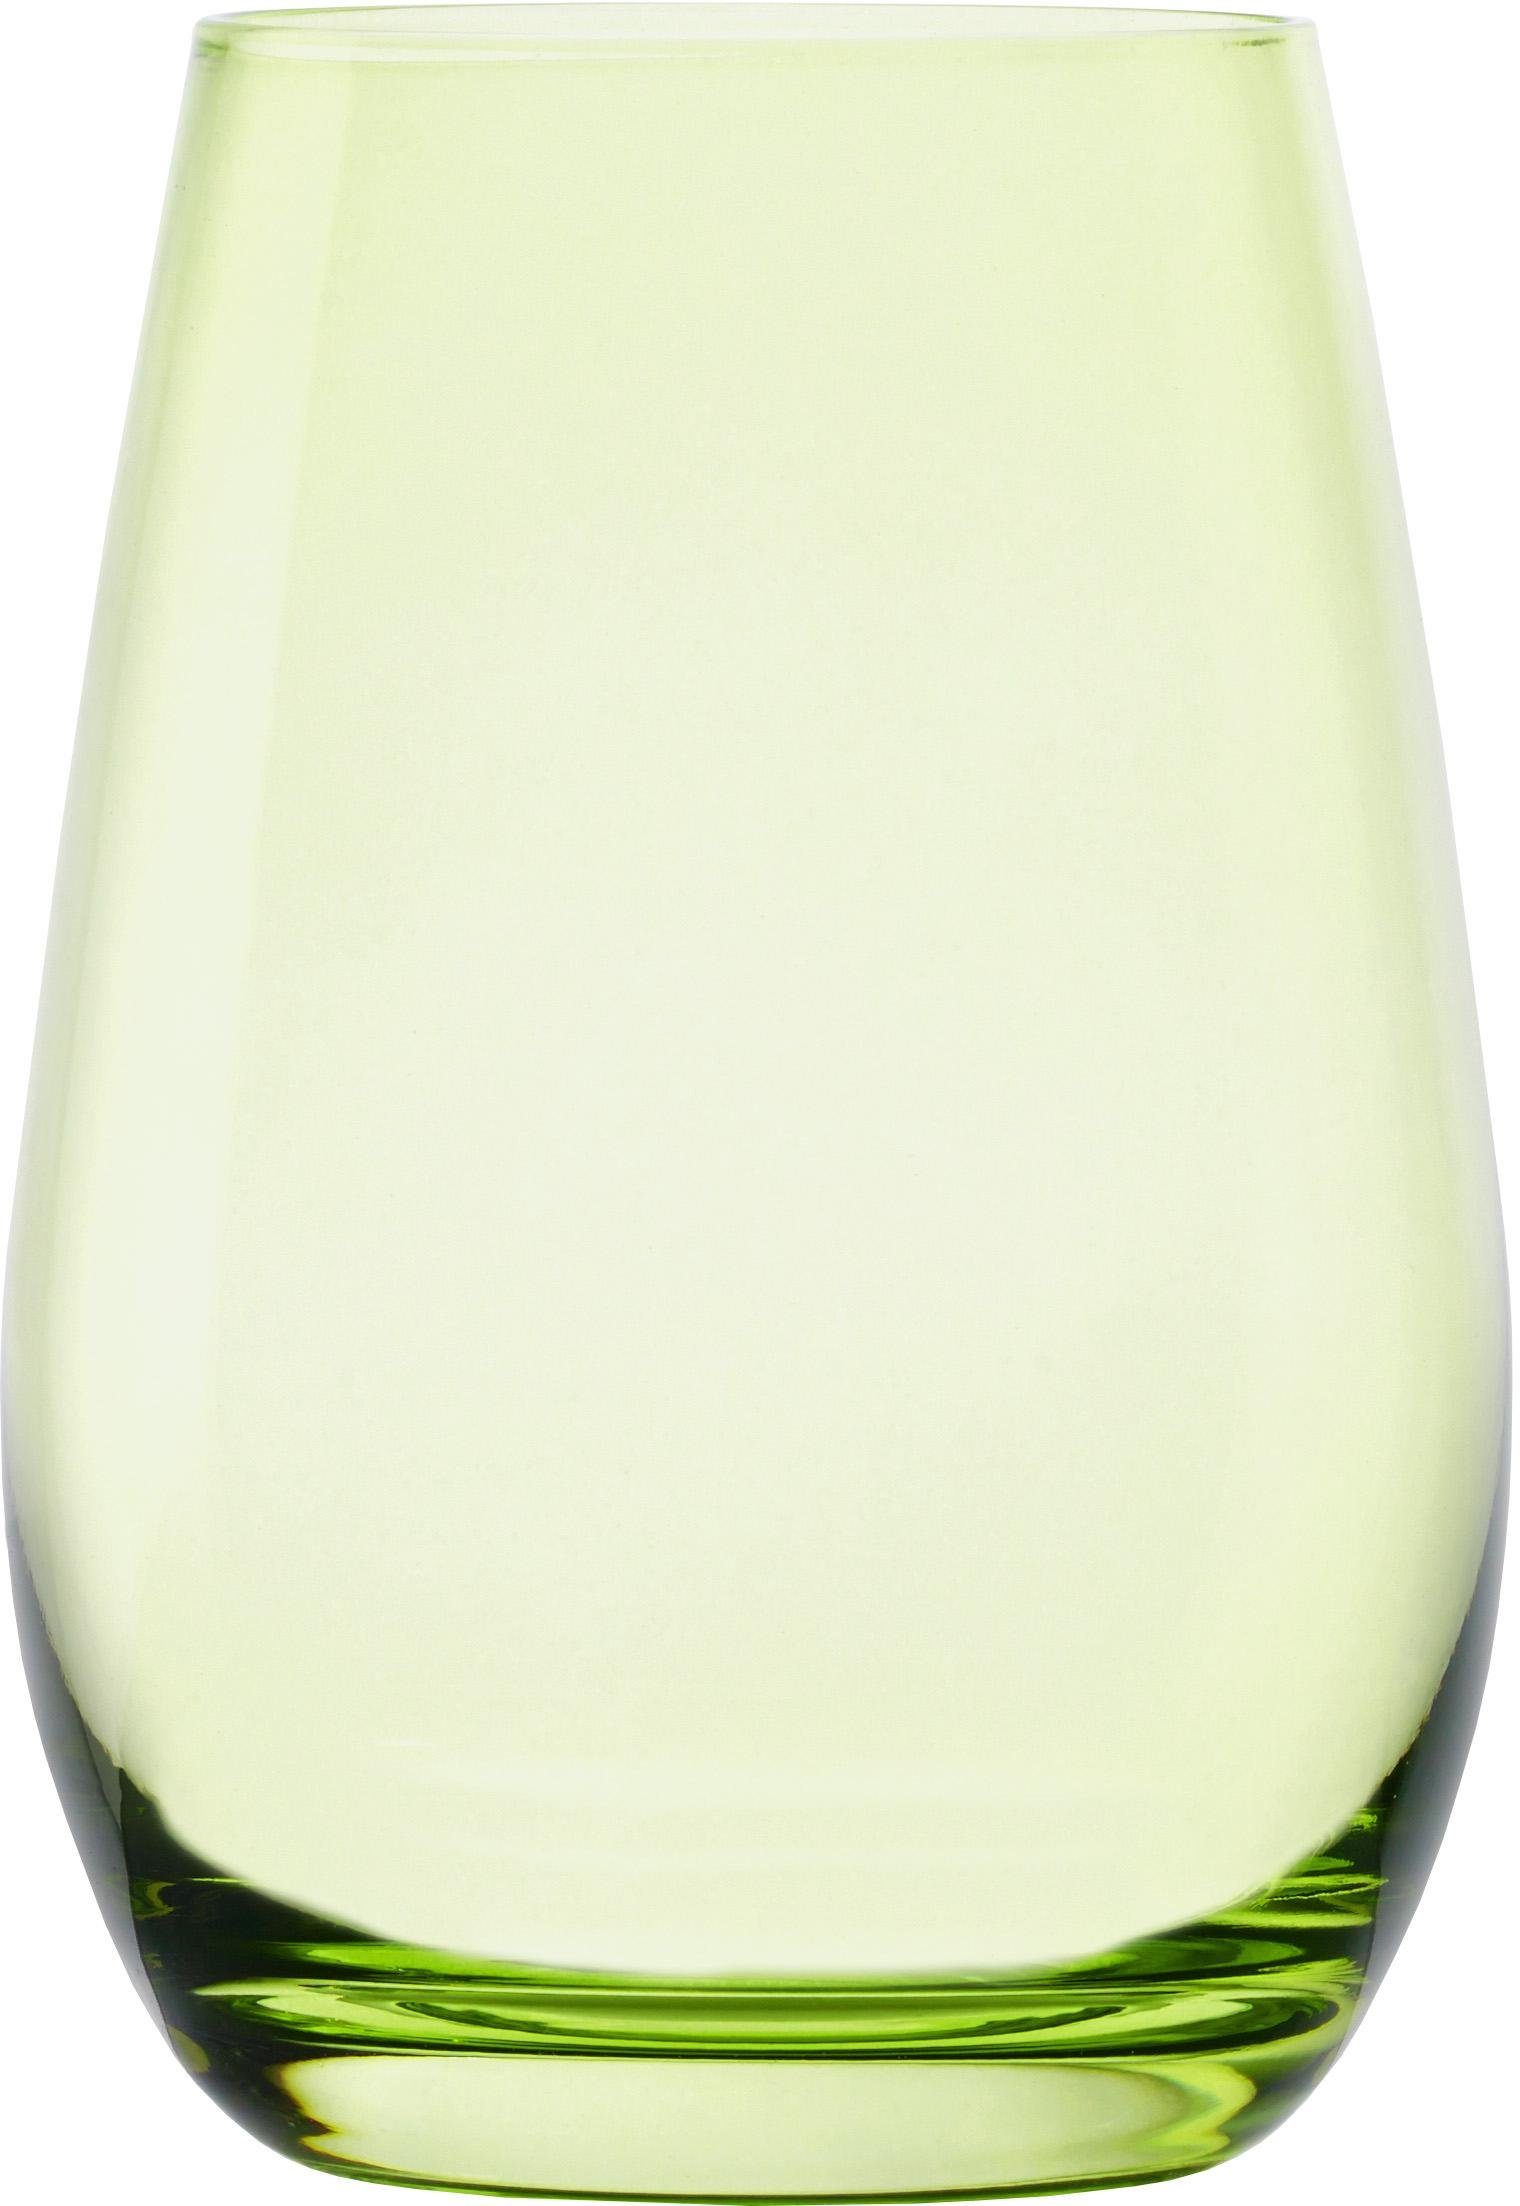 Stölzle Becher ELEMENTS, Glas, 6-teilig grün